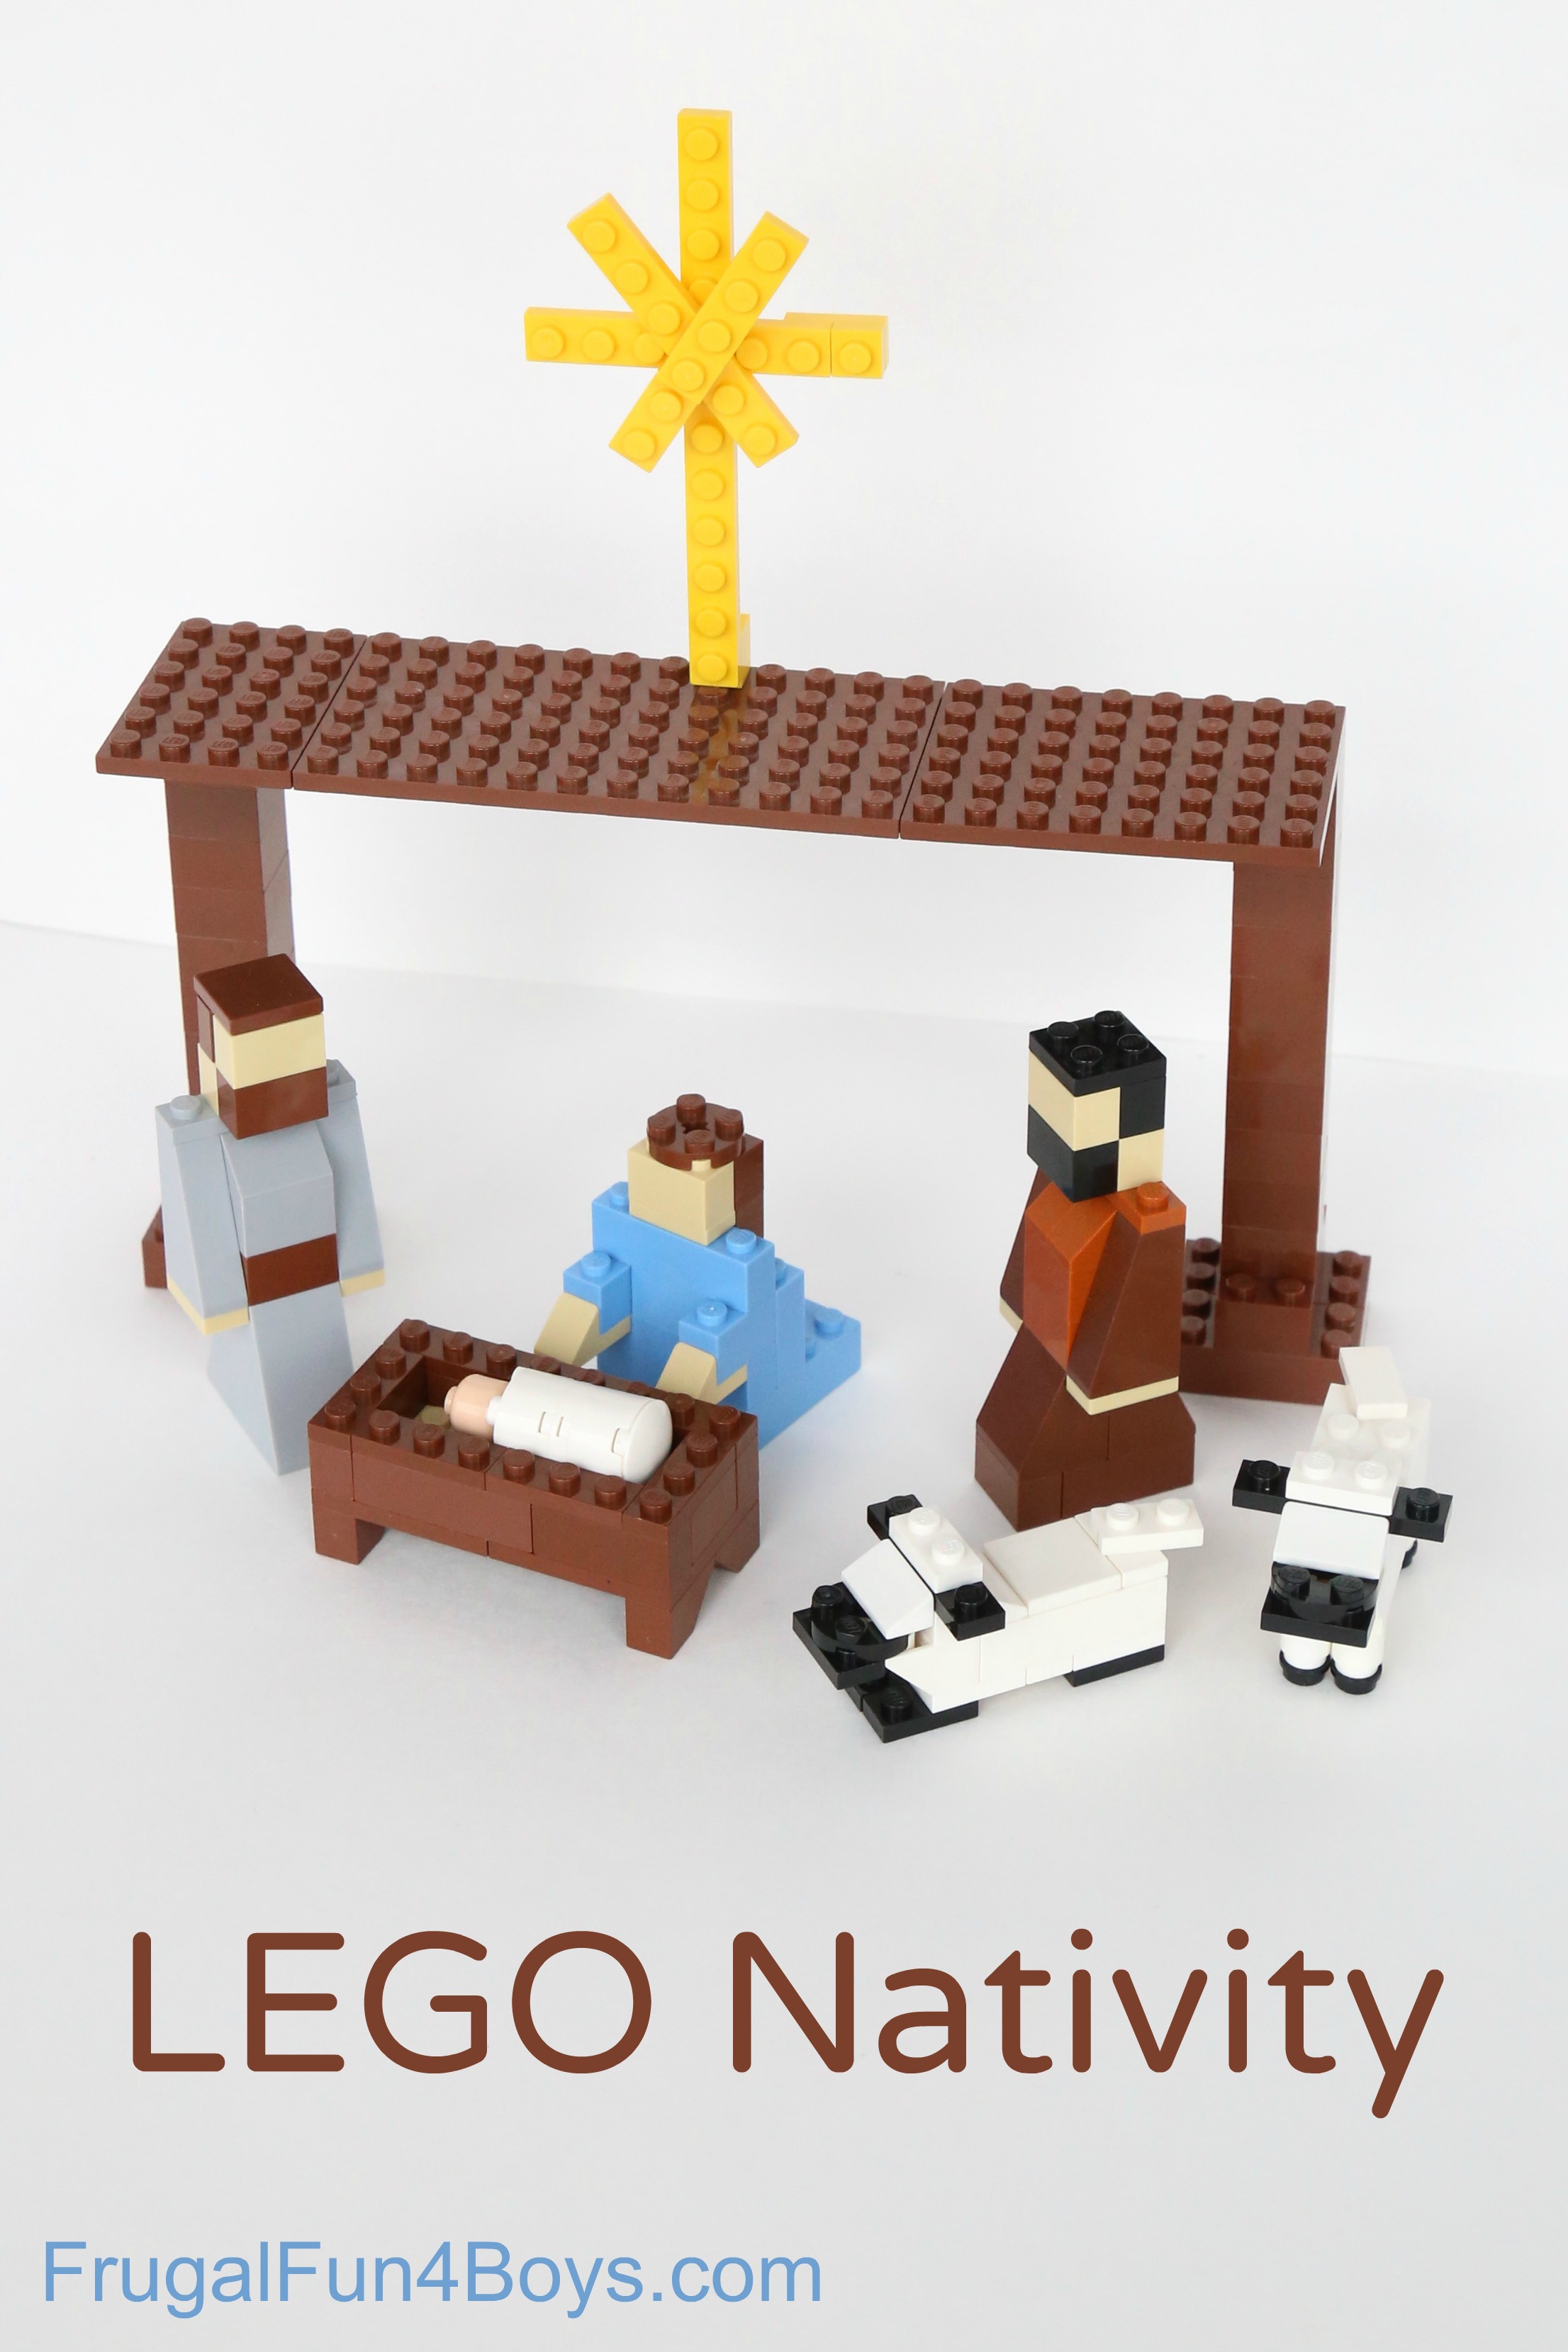 How to Build a LEGO Nativity Set